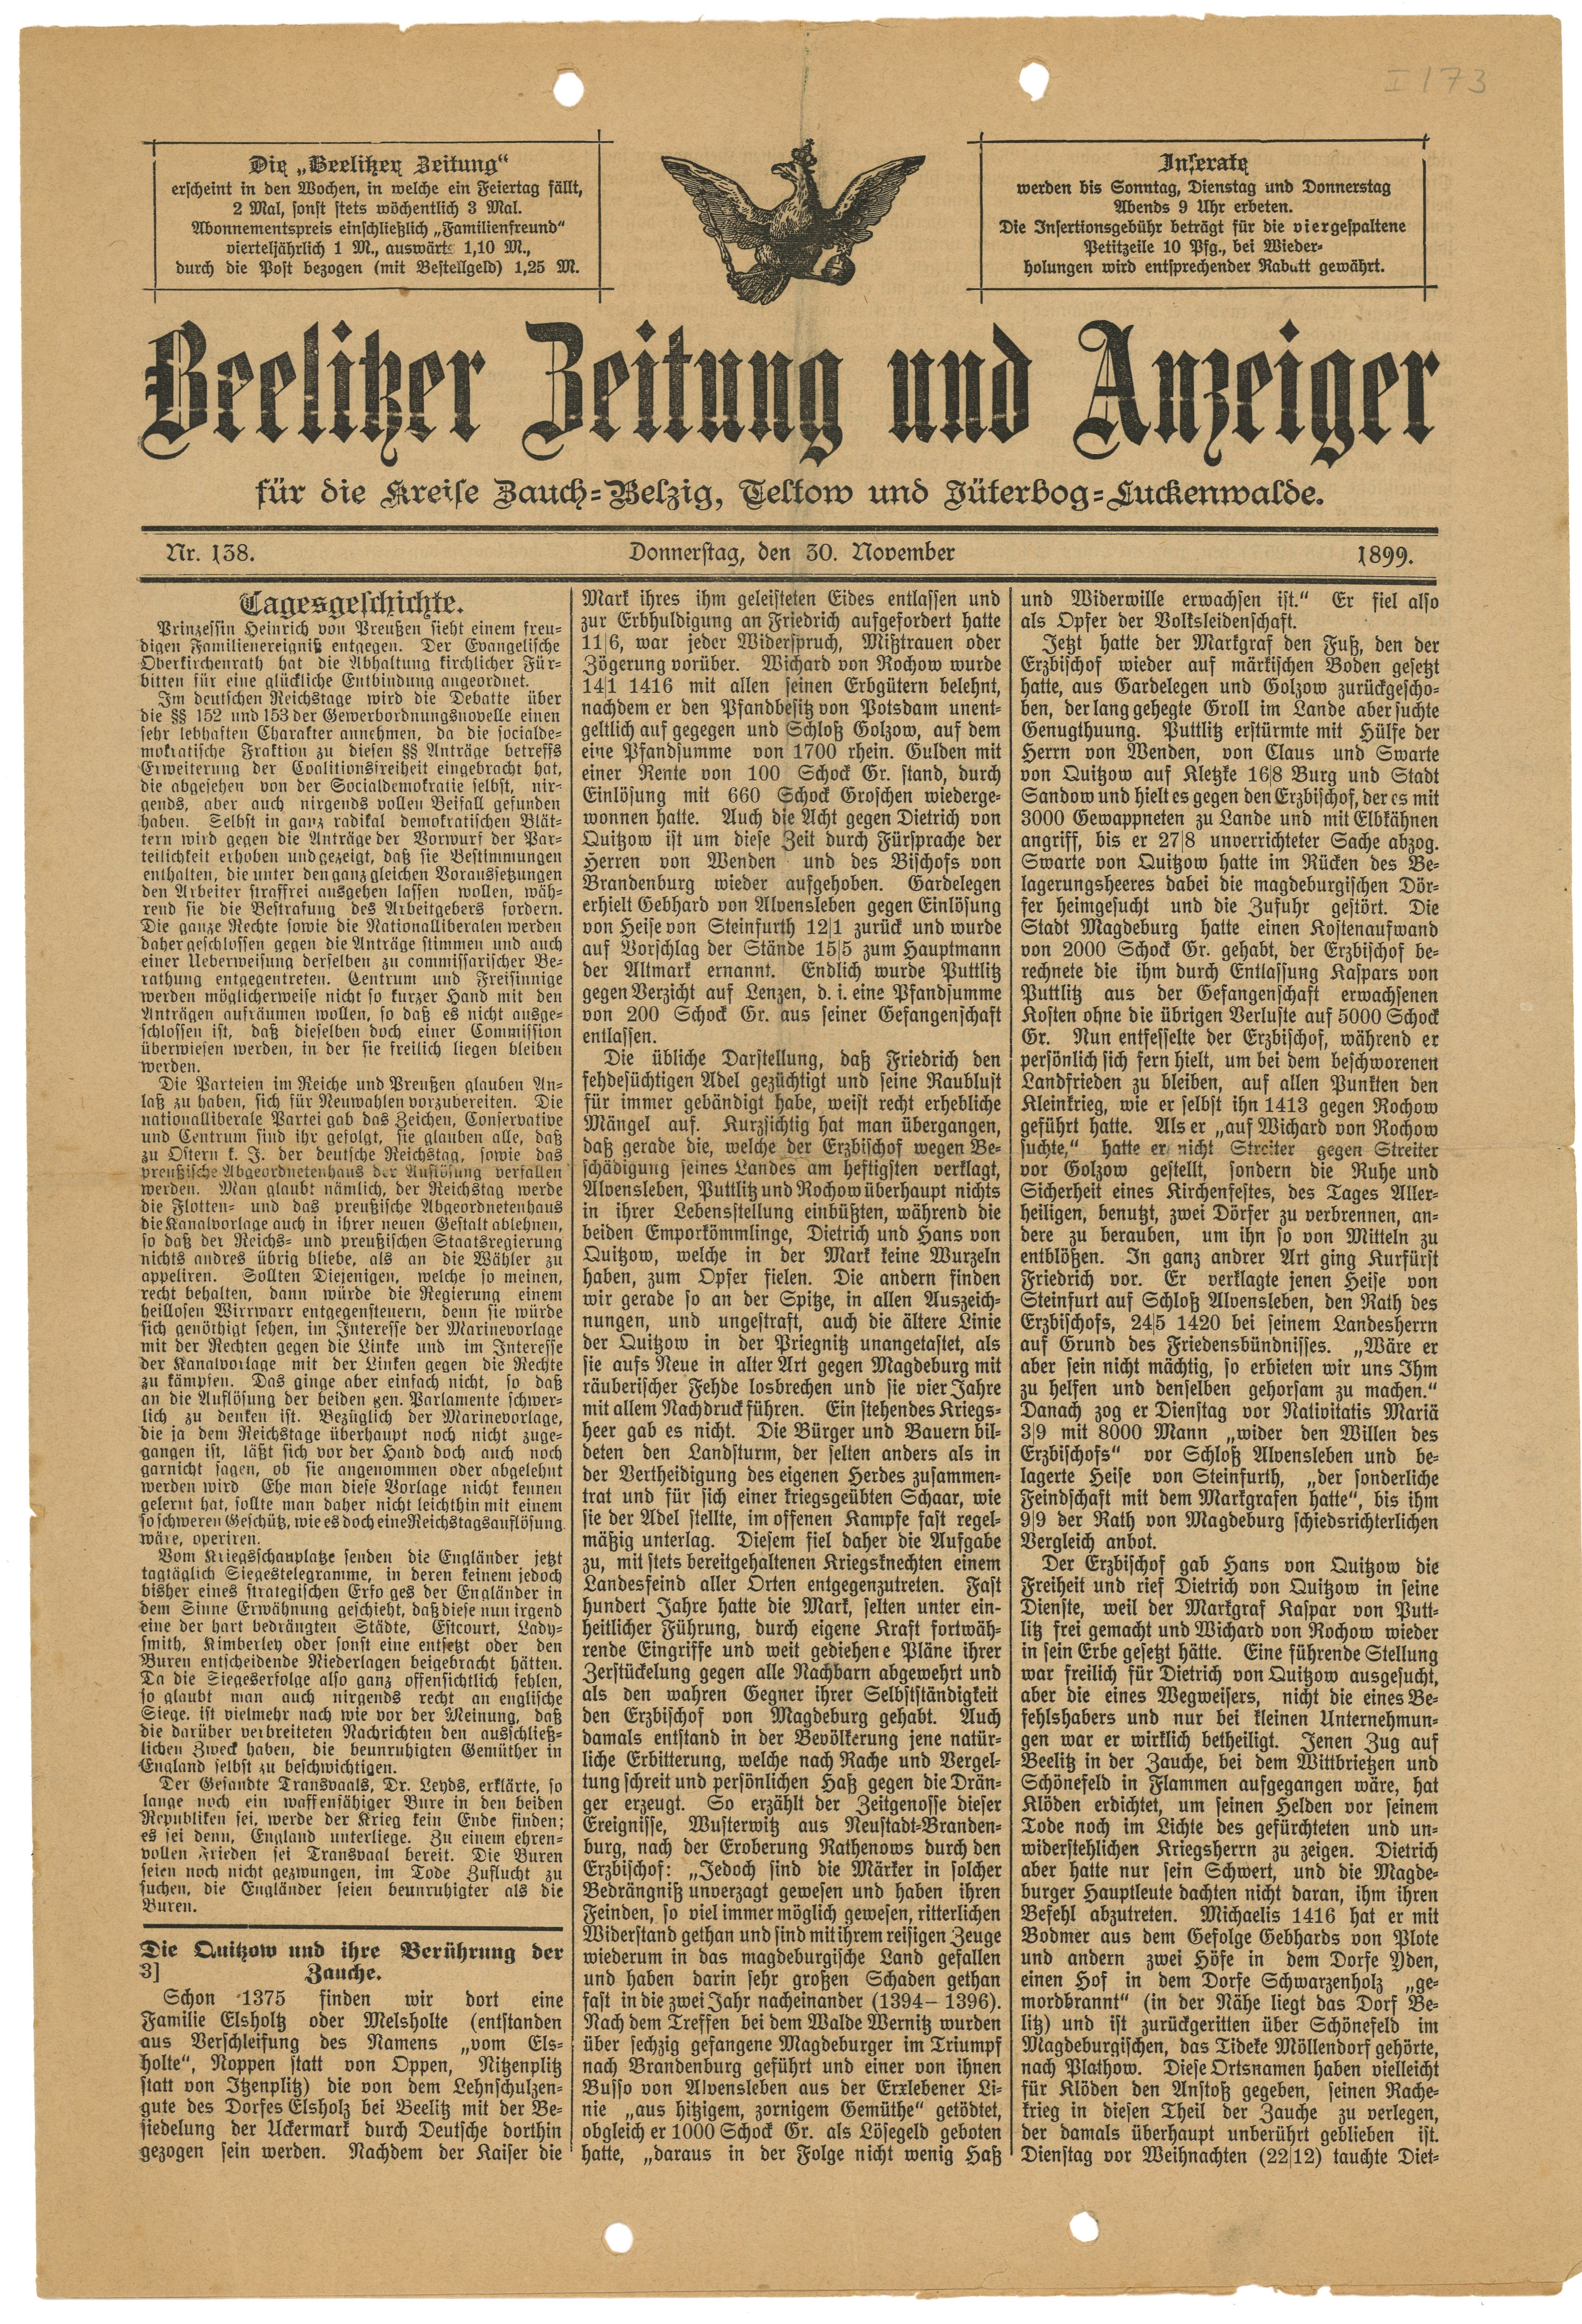 Beelitzer Zeitung und Anzeiger, Nr. 138, 30. November 1899 (Landesgeschichtliche Vereinigung für die Mark Brandenburg e.V., Archiv CC BY)